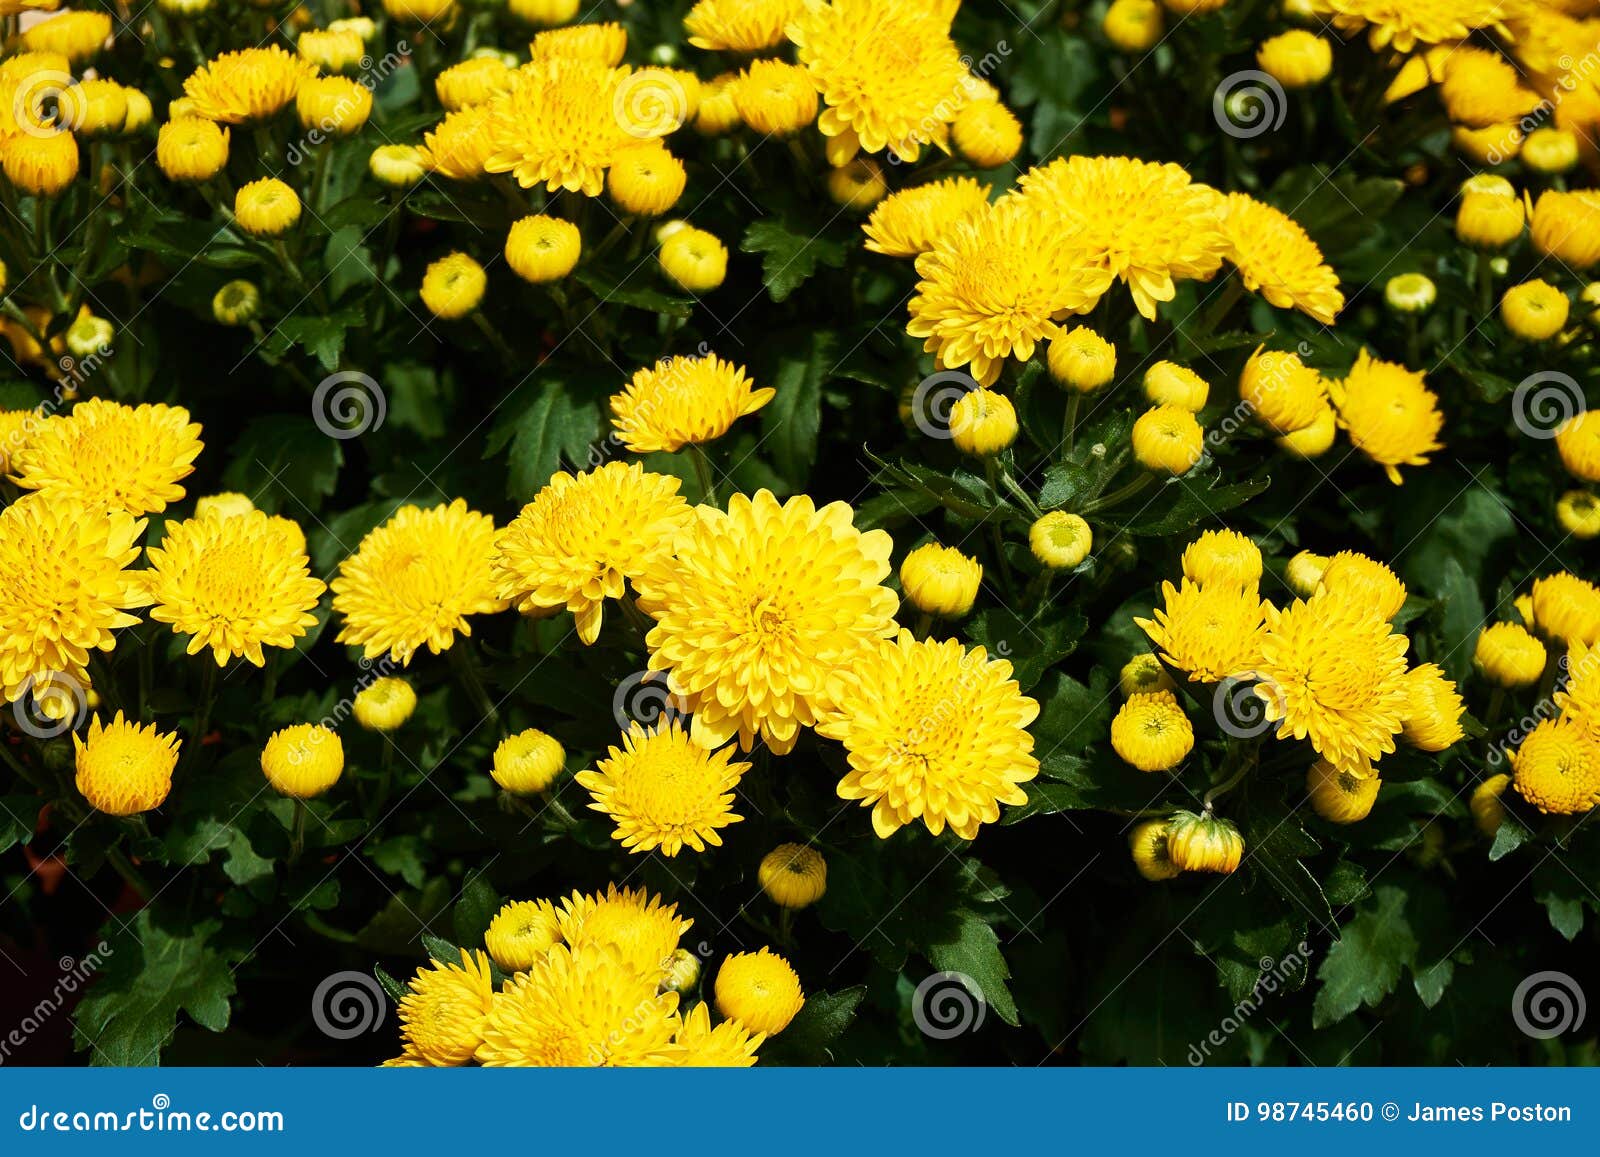 beautiful group of yellow mums